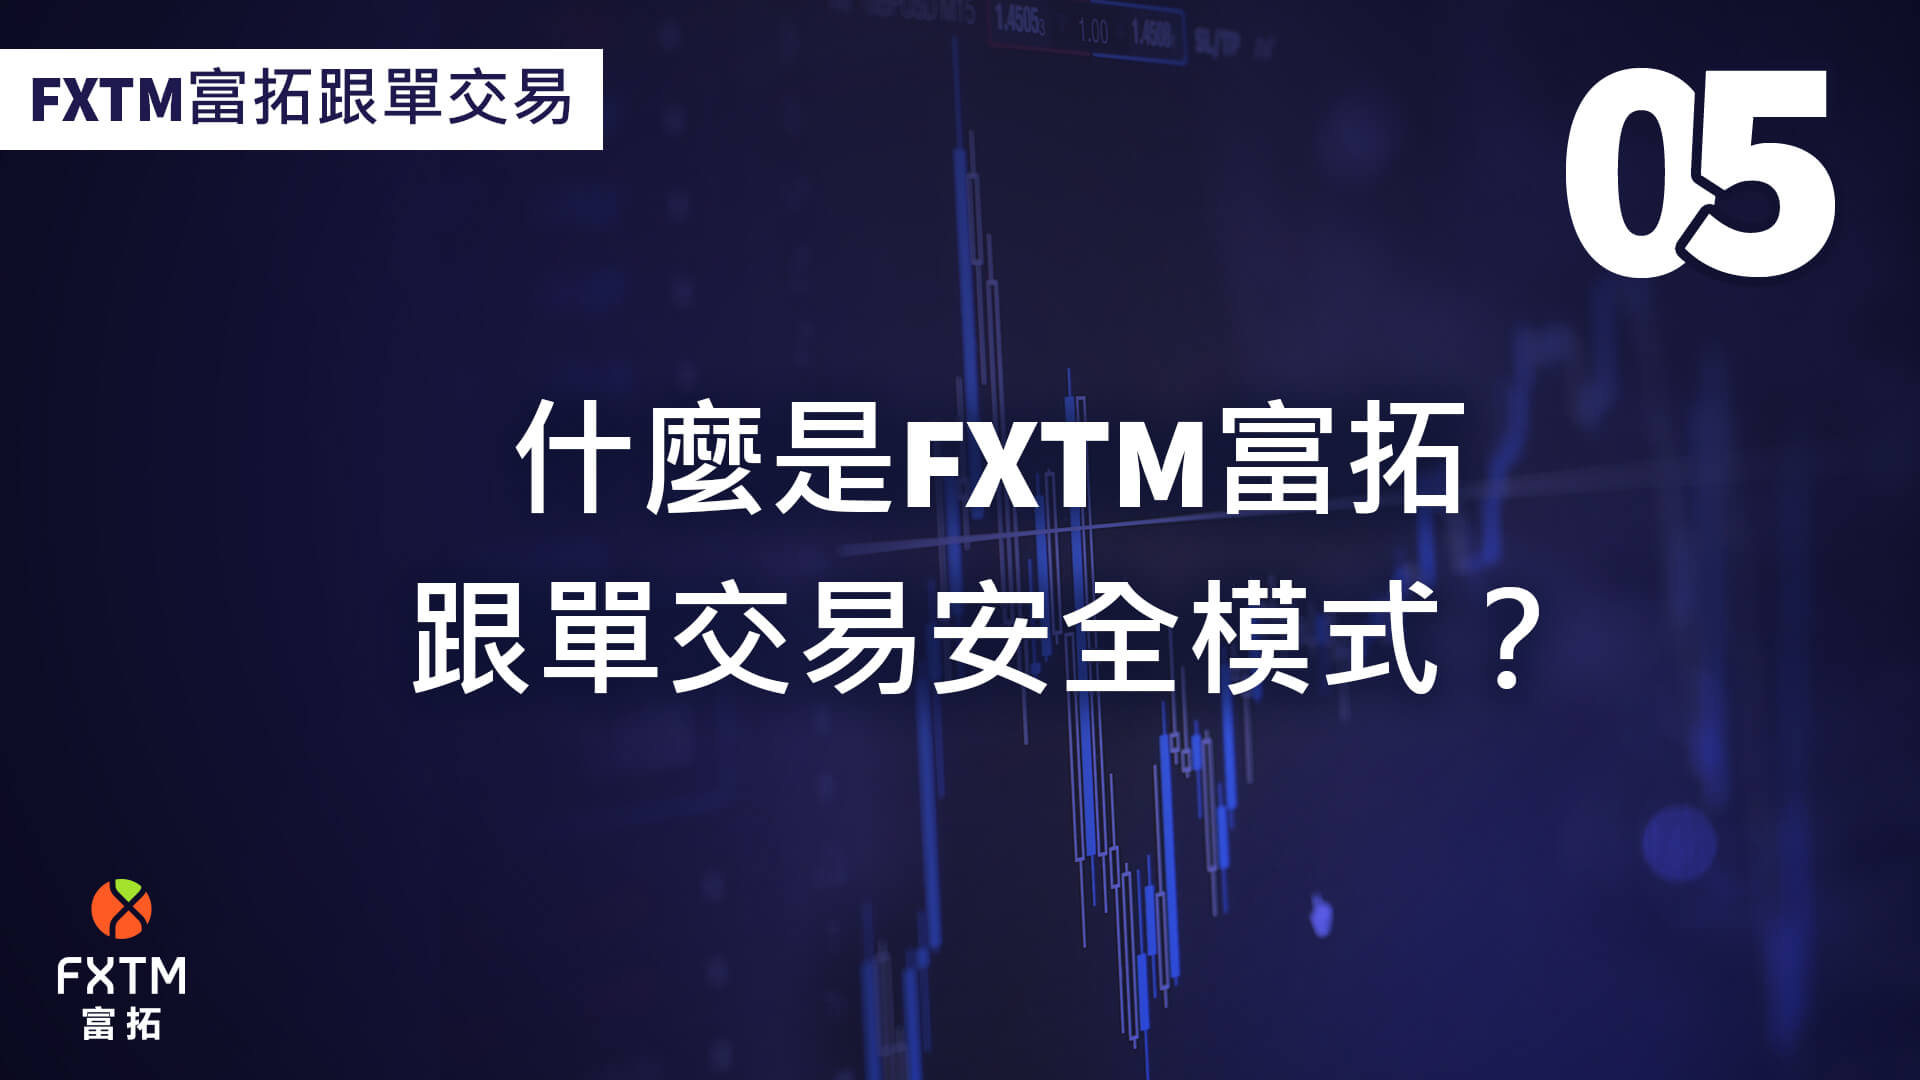 什麼是FXTM富拓跟單交易安全模式？ 